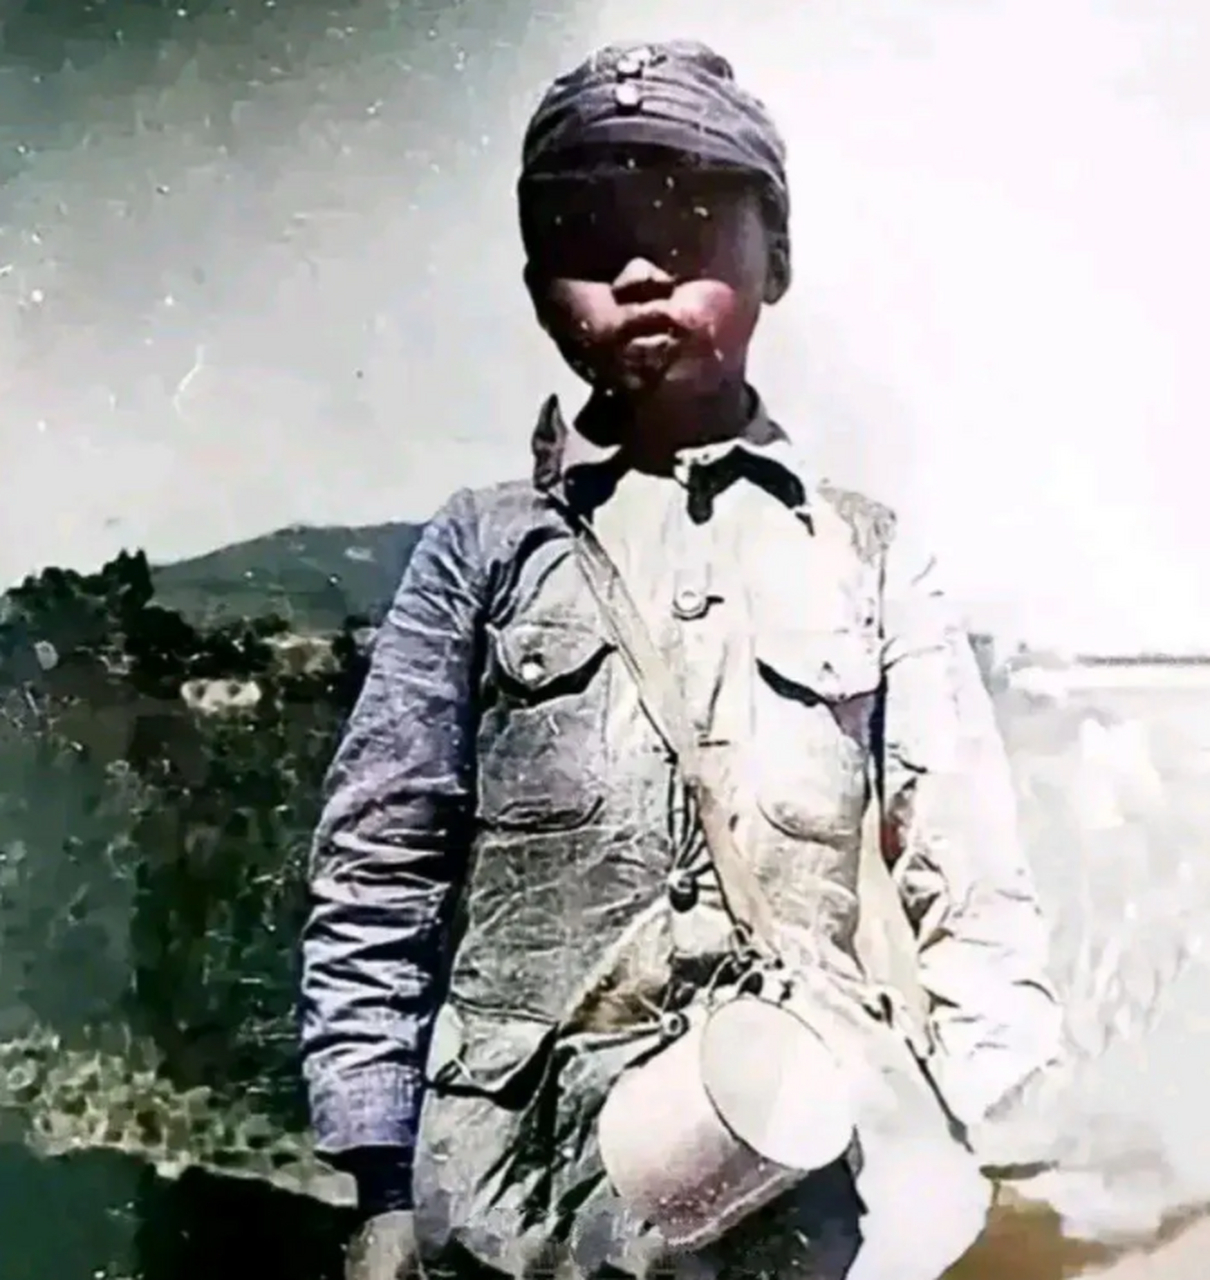 这是一张真实的抗战照片,是一个12岁的八路军小战士生前的最后一刻,一